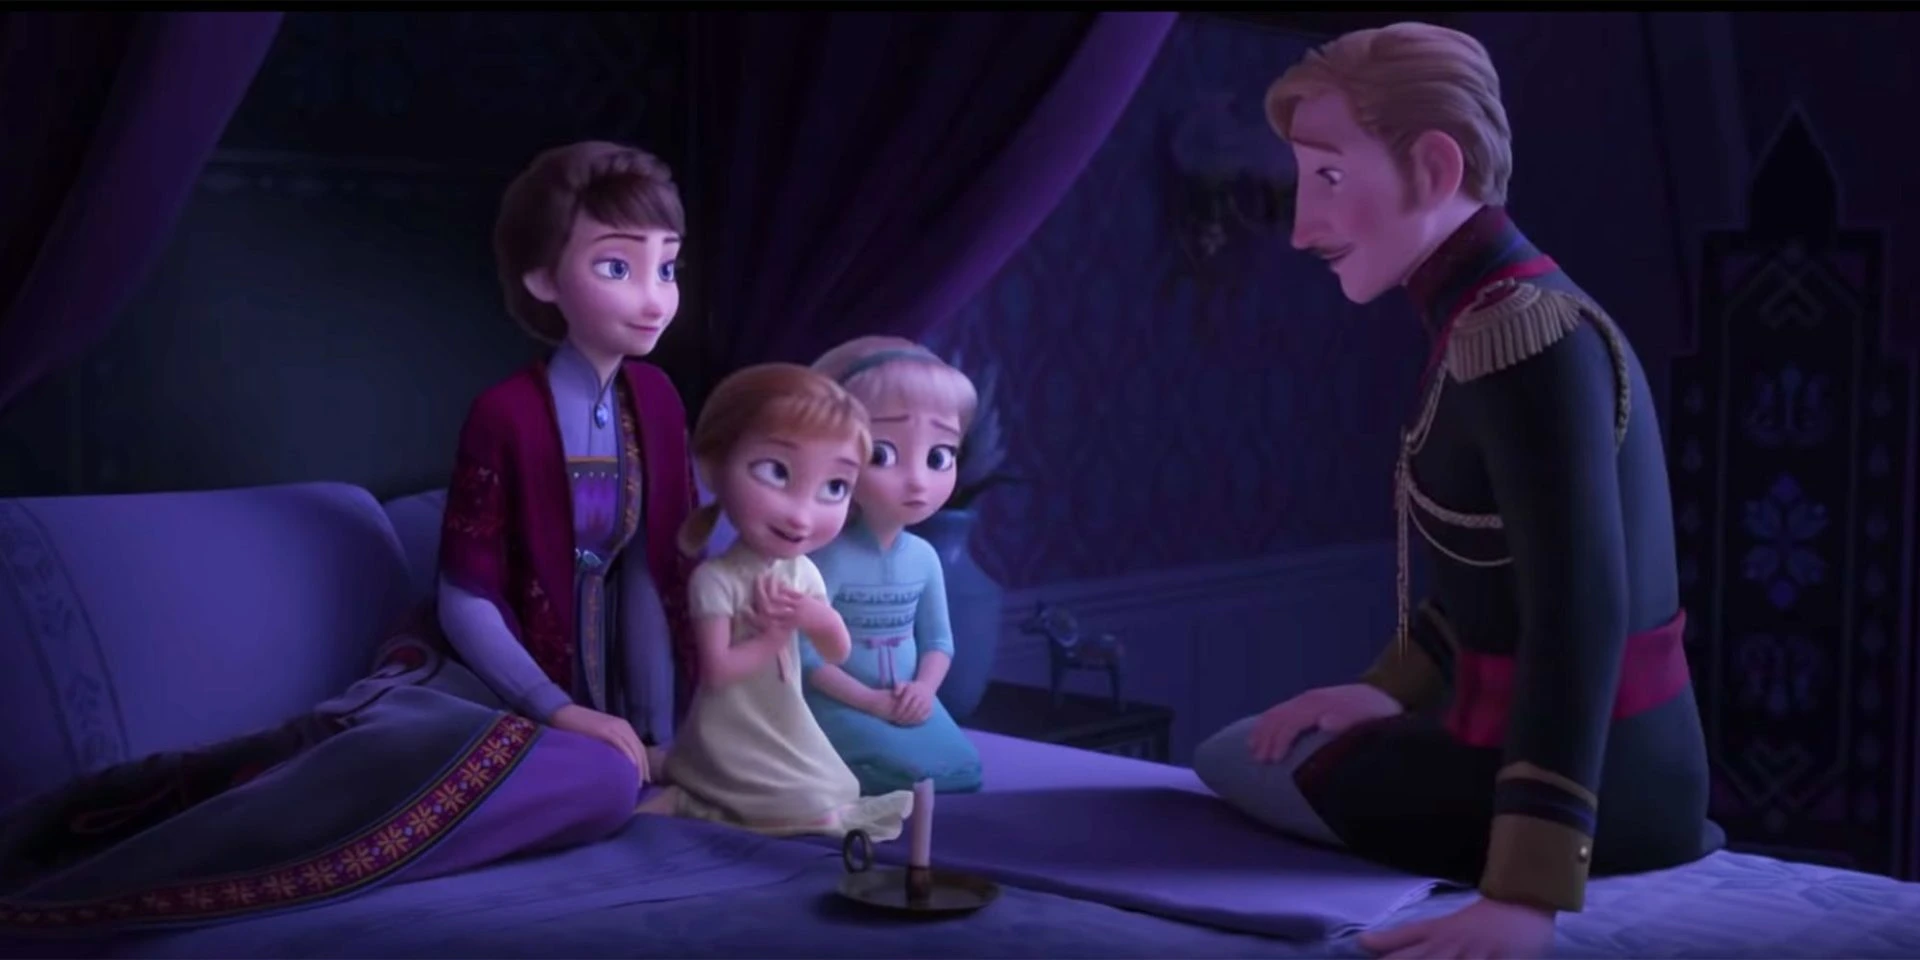 Disney lançará audiodrama de Frozen antes do 3º filme; entenda